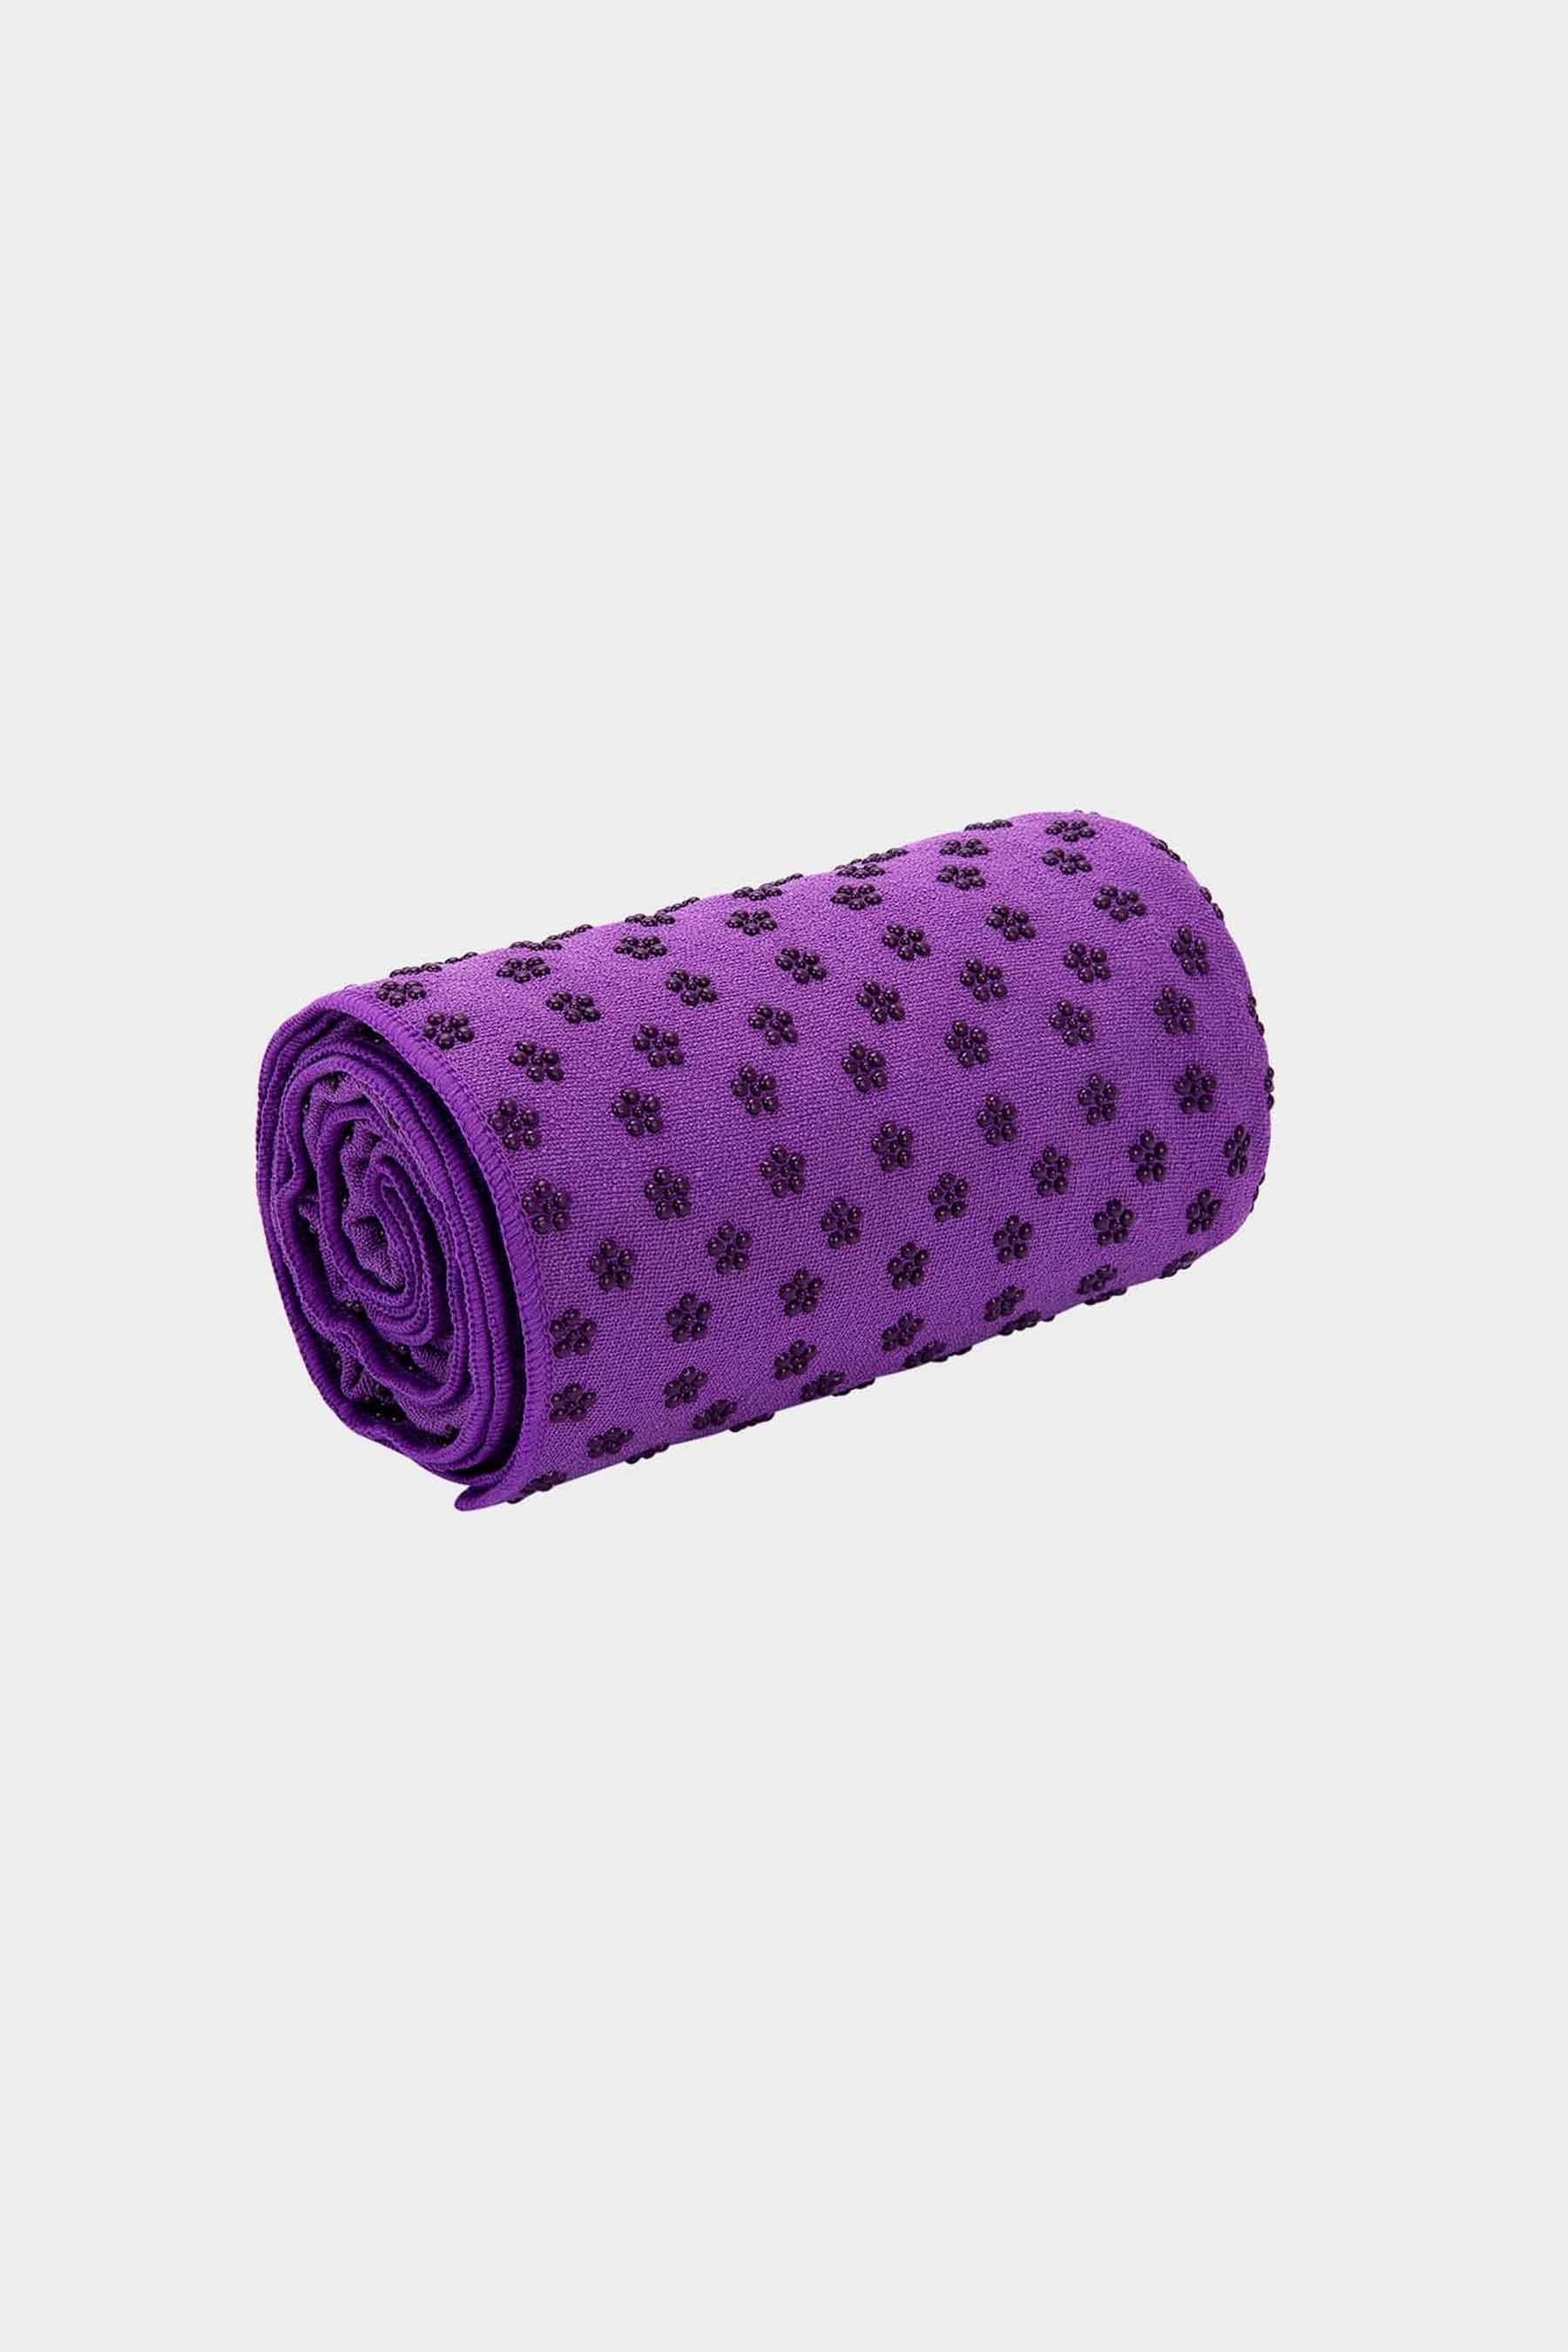 wintersweet Yoga towel